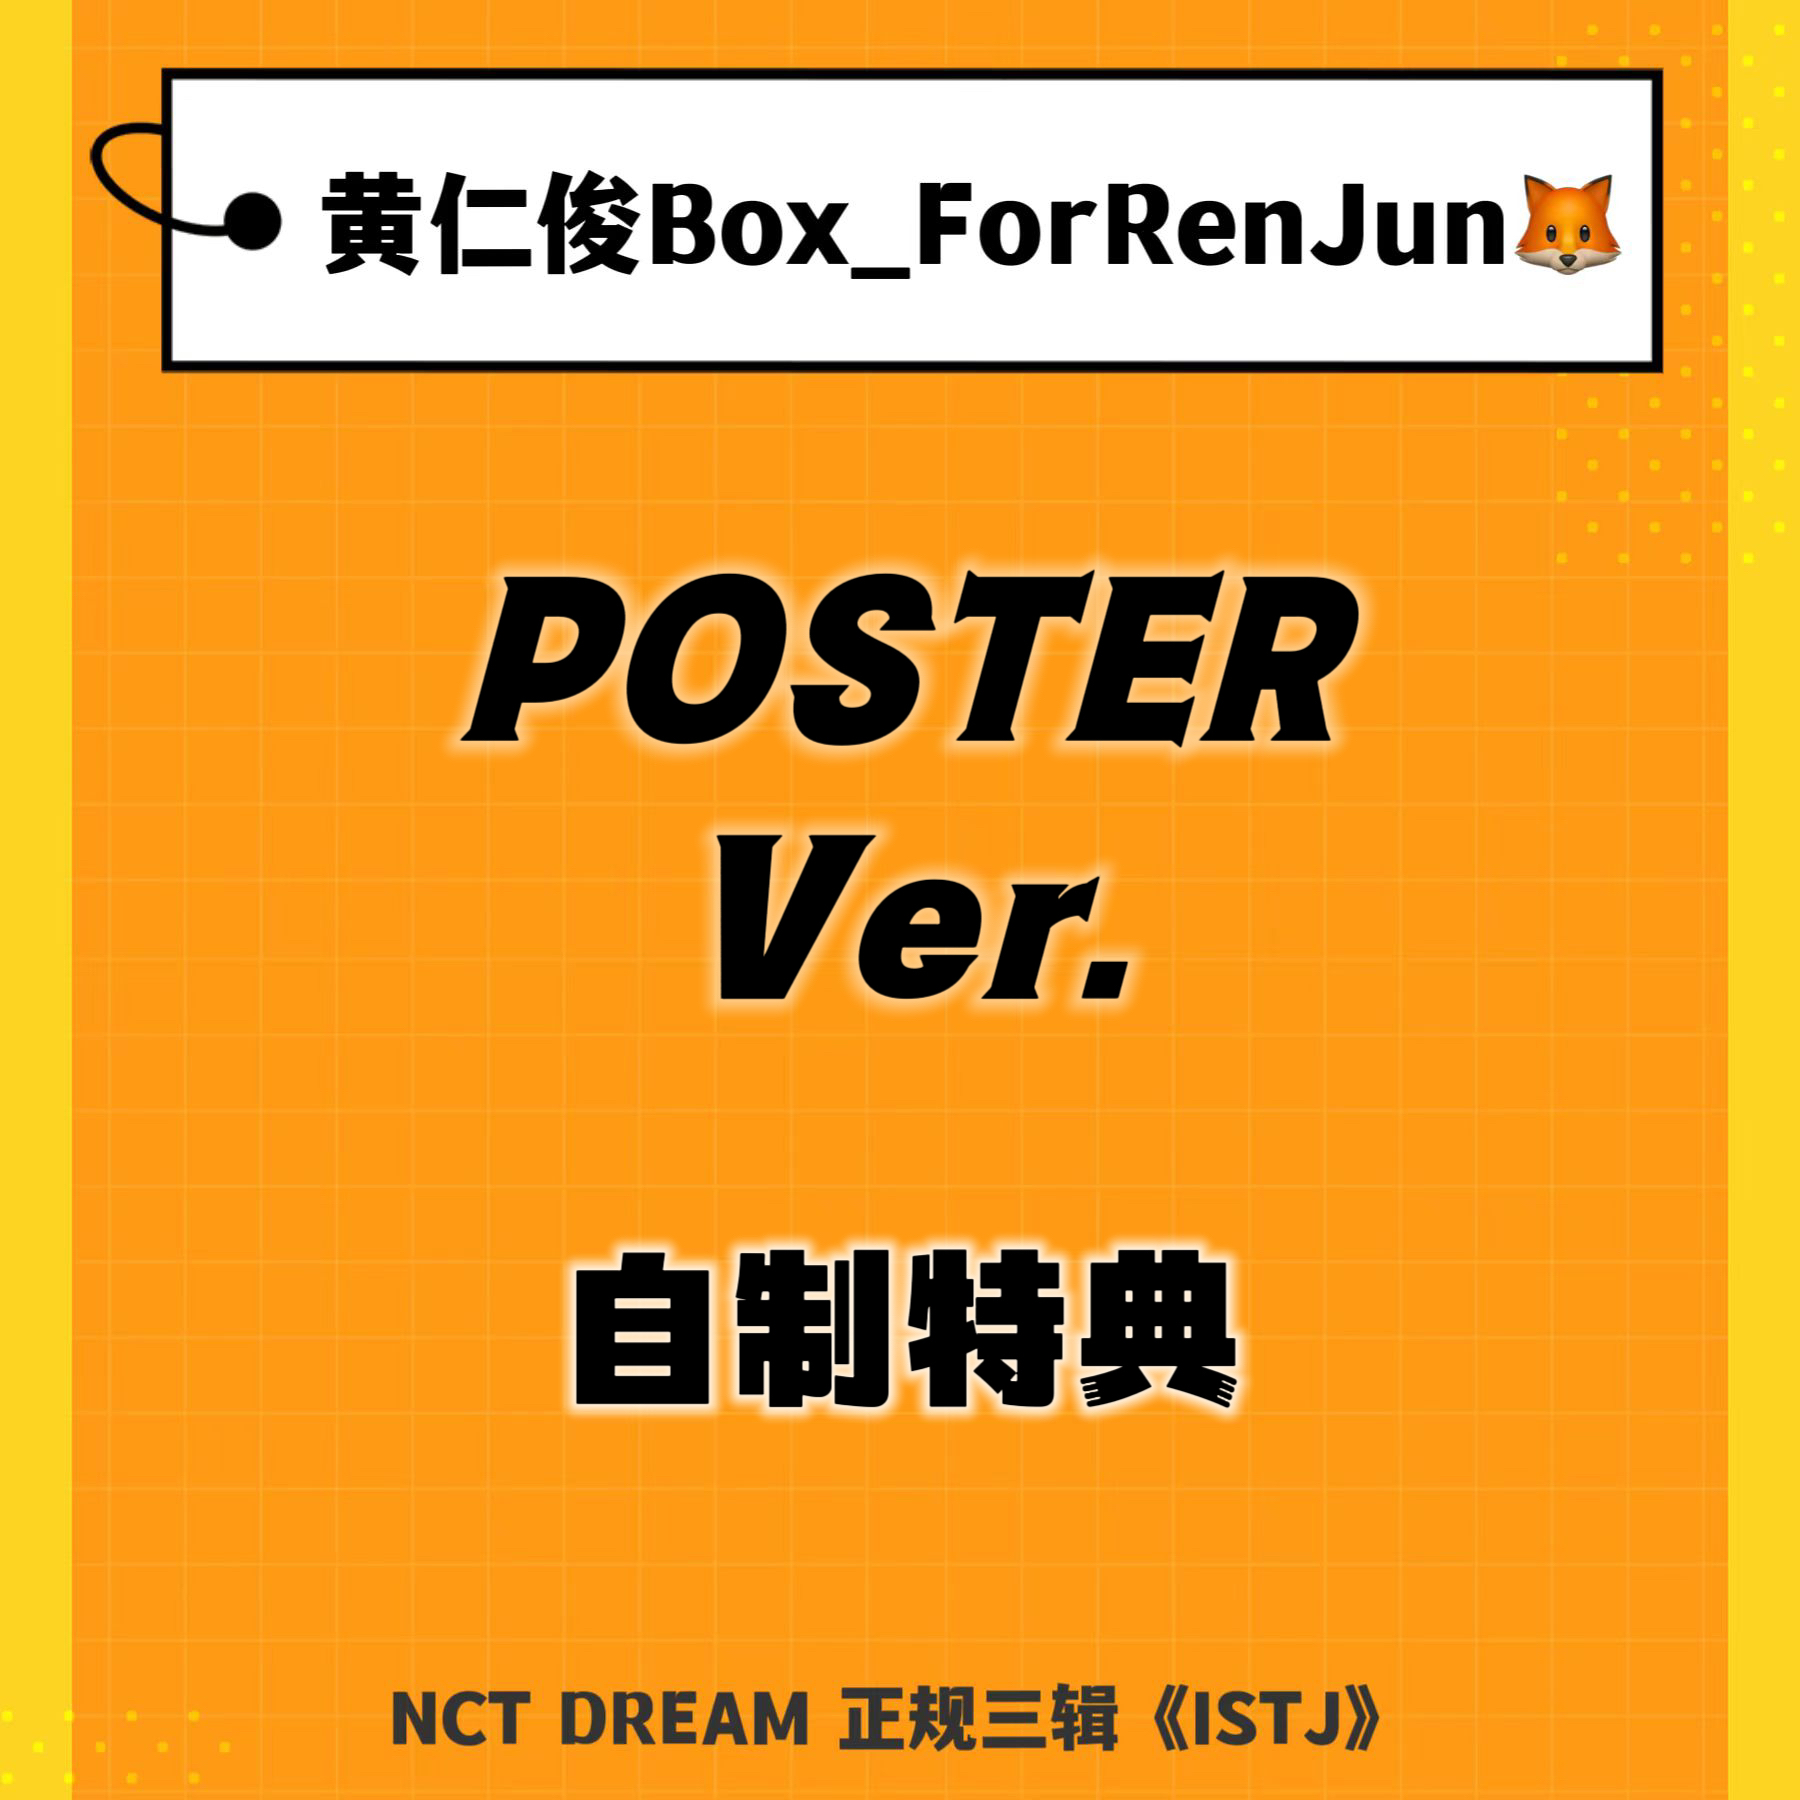 [补款 裸专] (*需备注微店手机号) NCT DREAM - 正规3辑 [ISTJ] (Poster Ver.) (随机版本)_黄仁俊吧RenJunBar